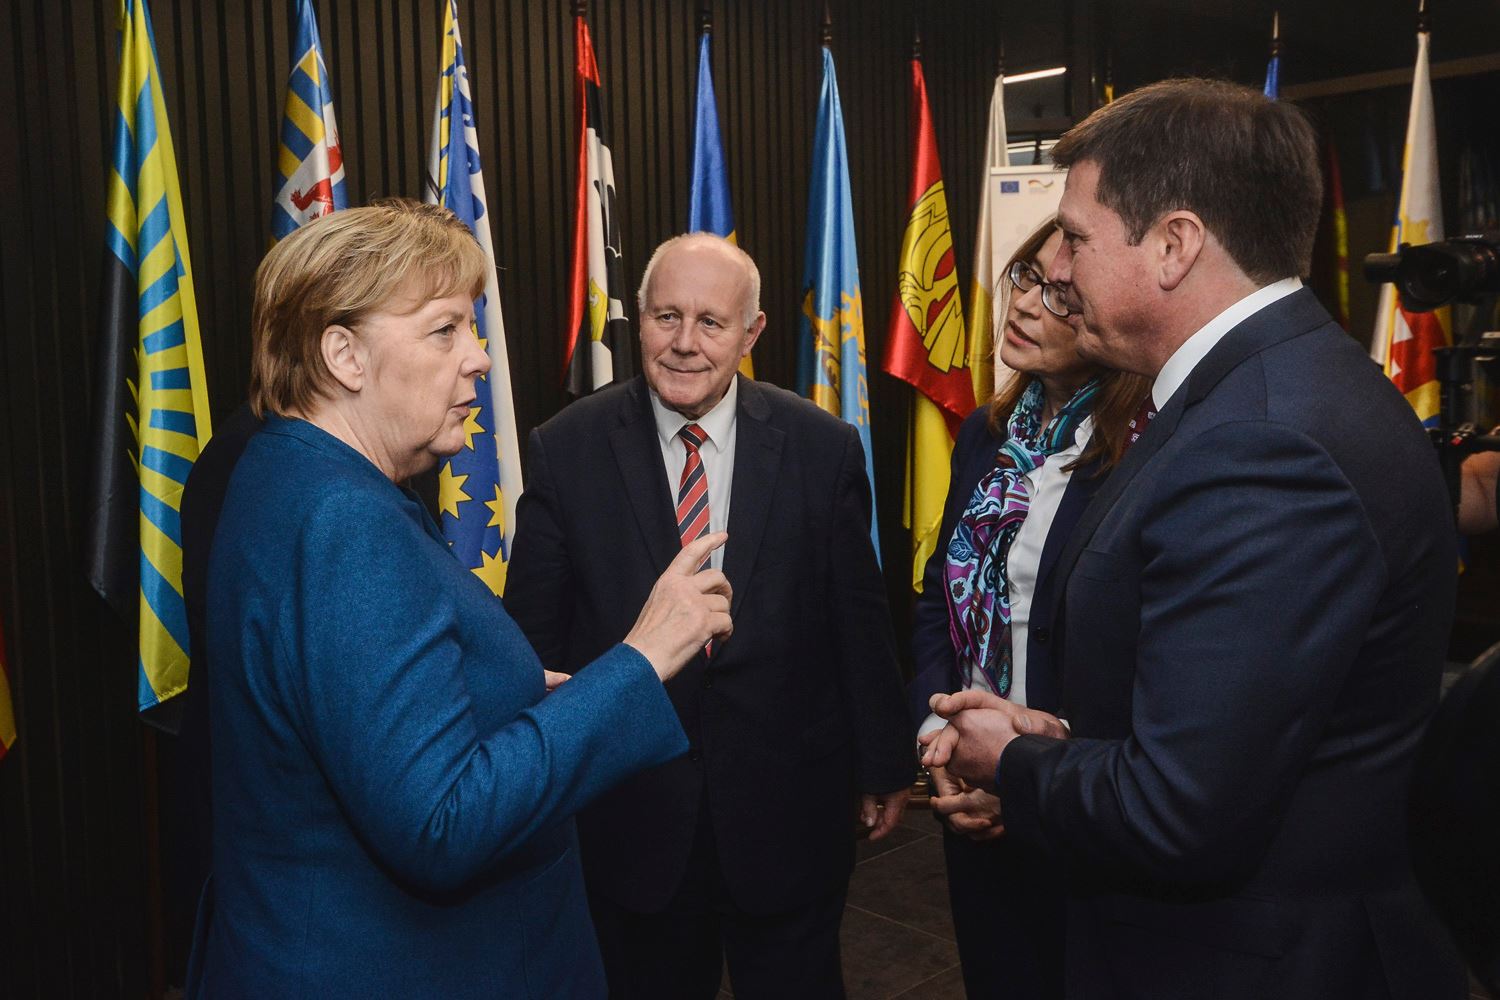 Ангела Меркель високо оцінила  децентралізацію в Україні